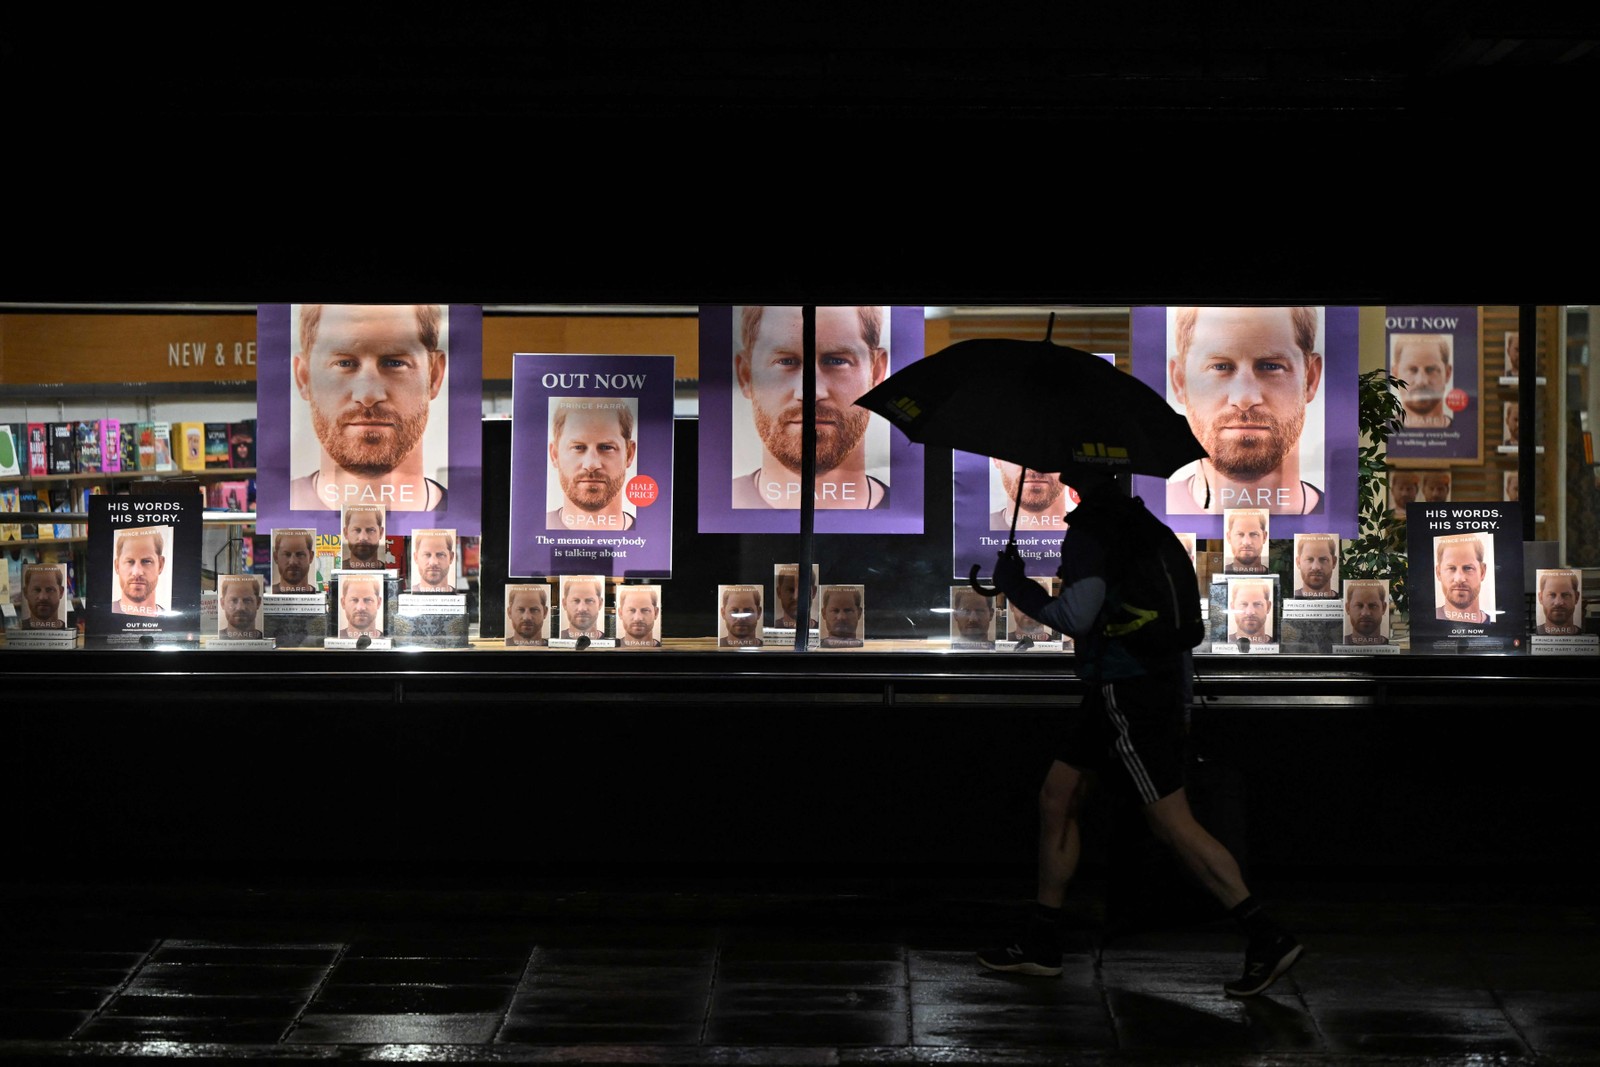 Homem passa em frente à livraria anunciando o esperado lançamento de "Spare", a autobiografia do príncipe britânico Harry, em Londres. — Foto: JUSTIN TALLIS / AFP